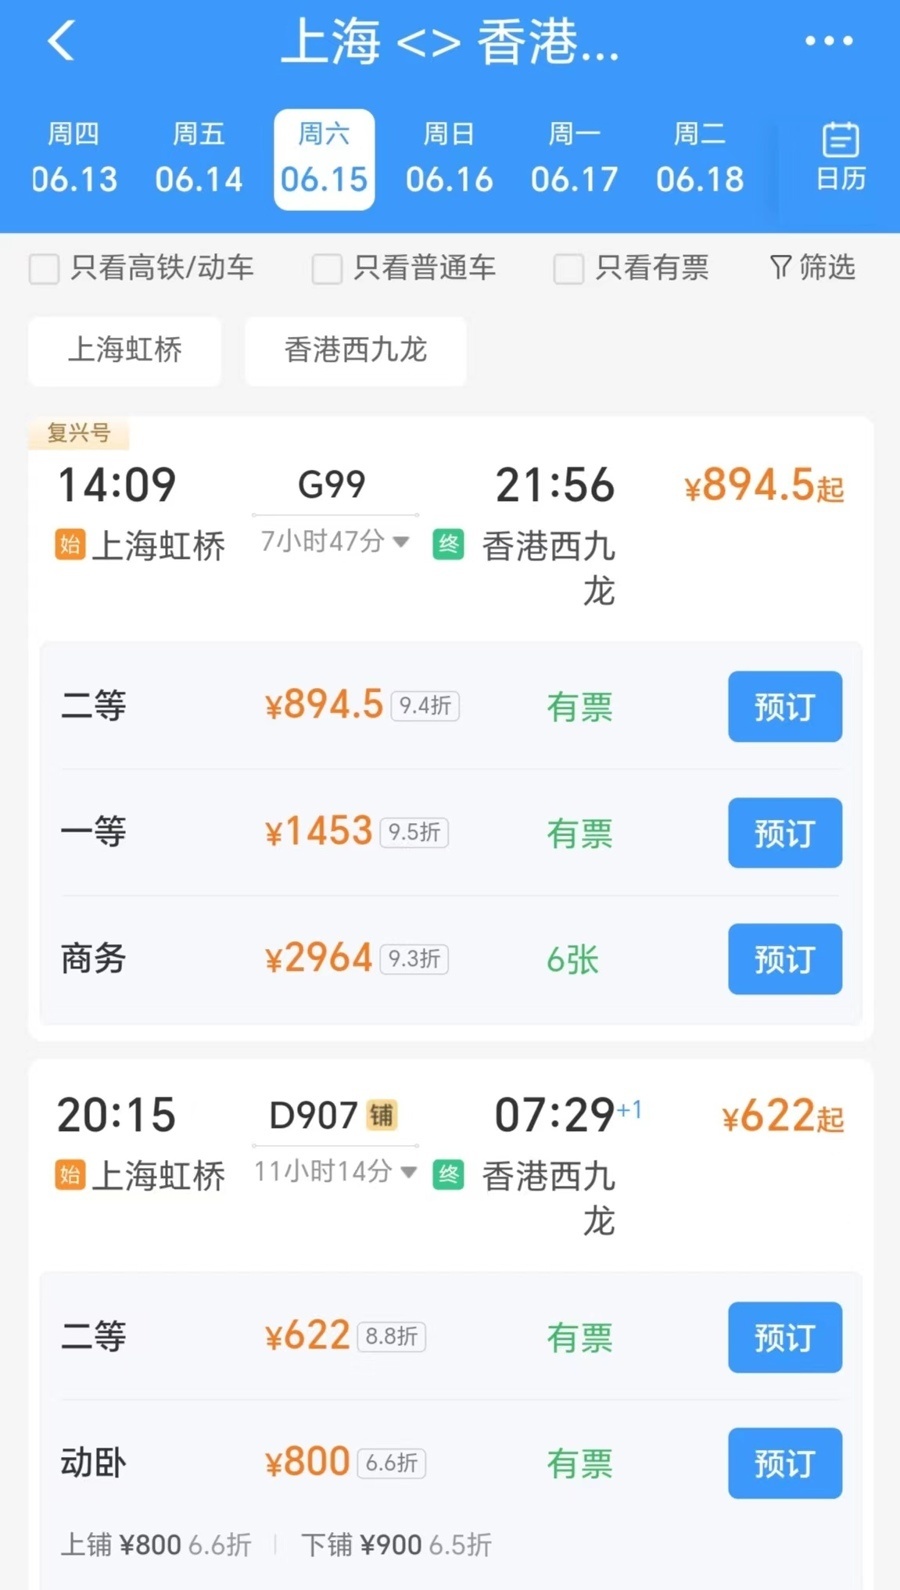 相比高铁列车二等座,新的动卧列车二等座价格便宜了270多元,并且沪港